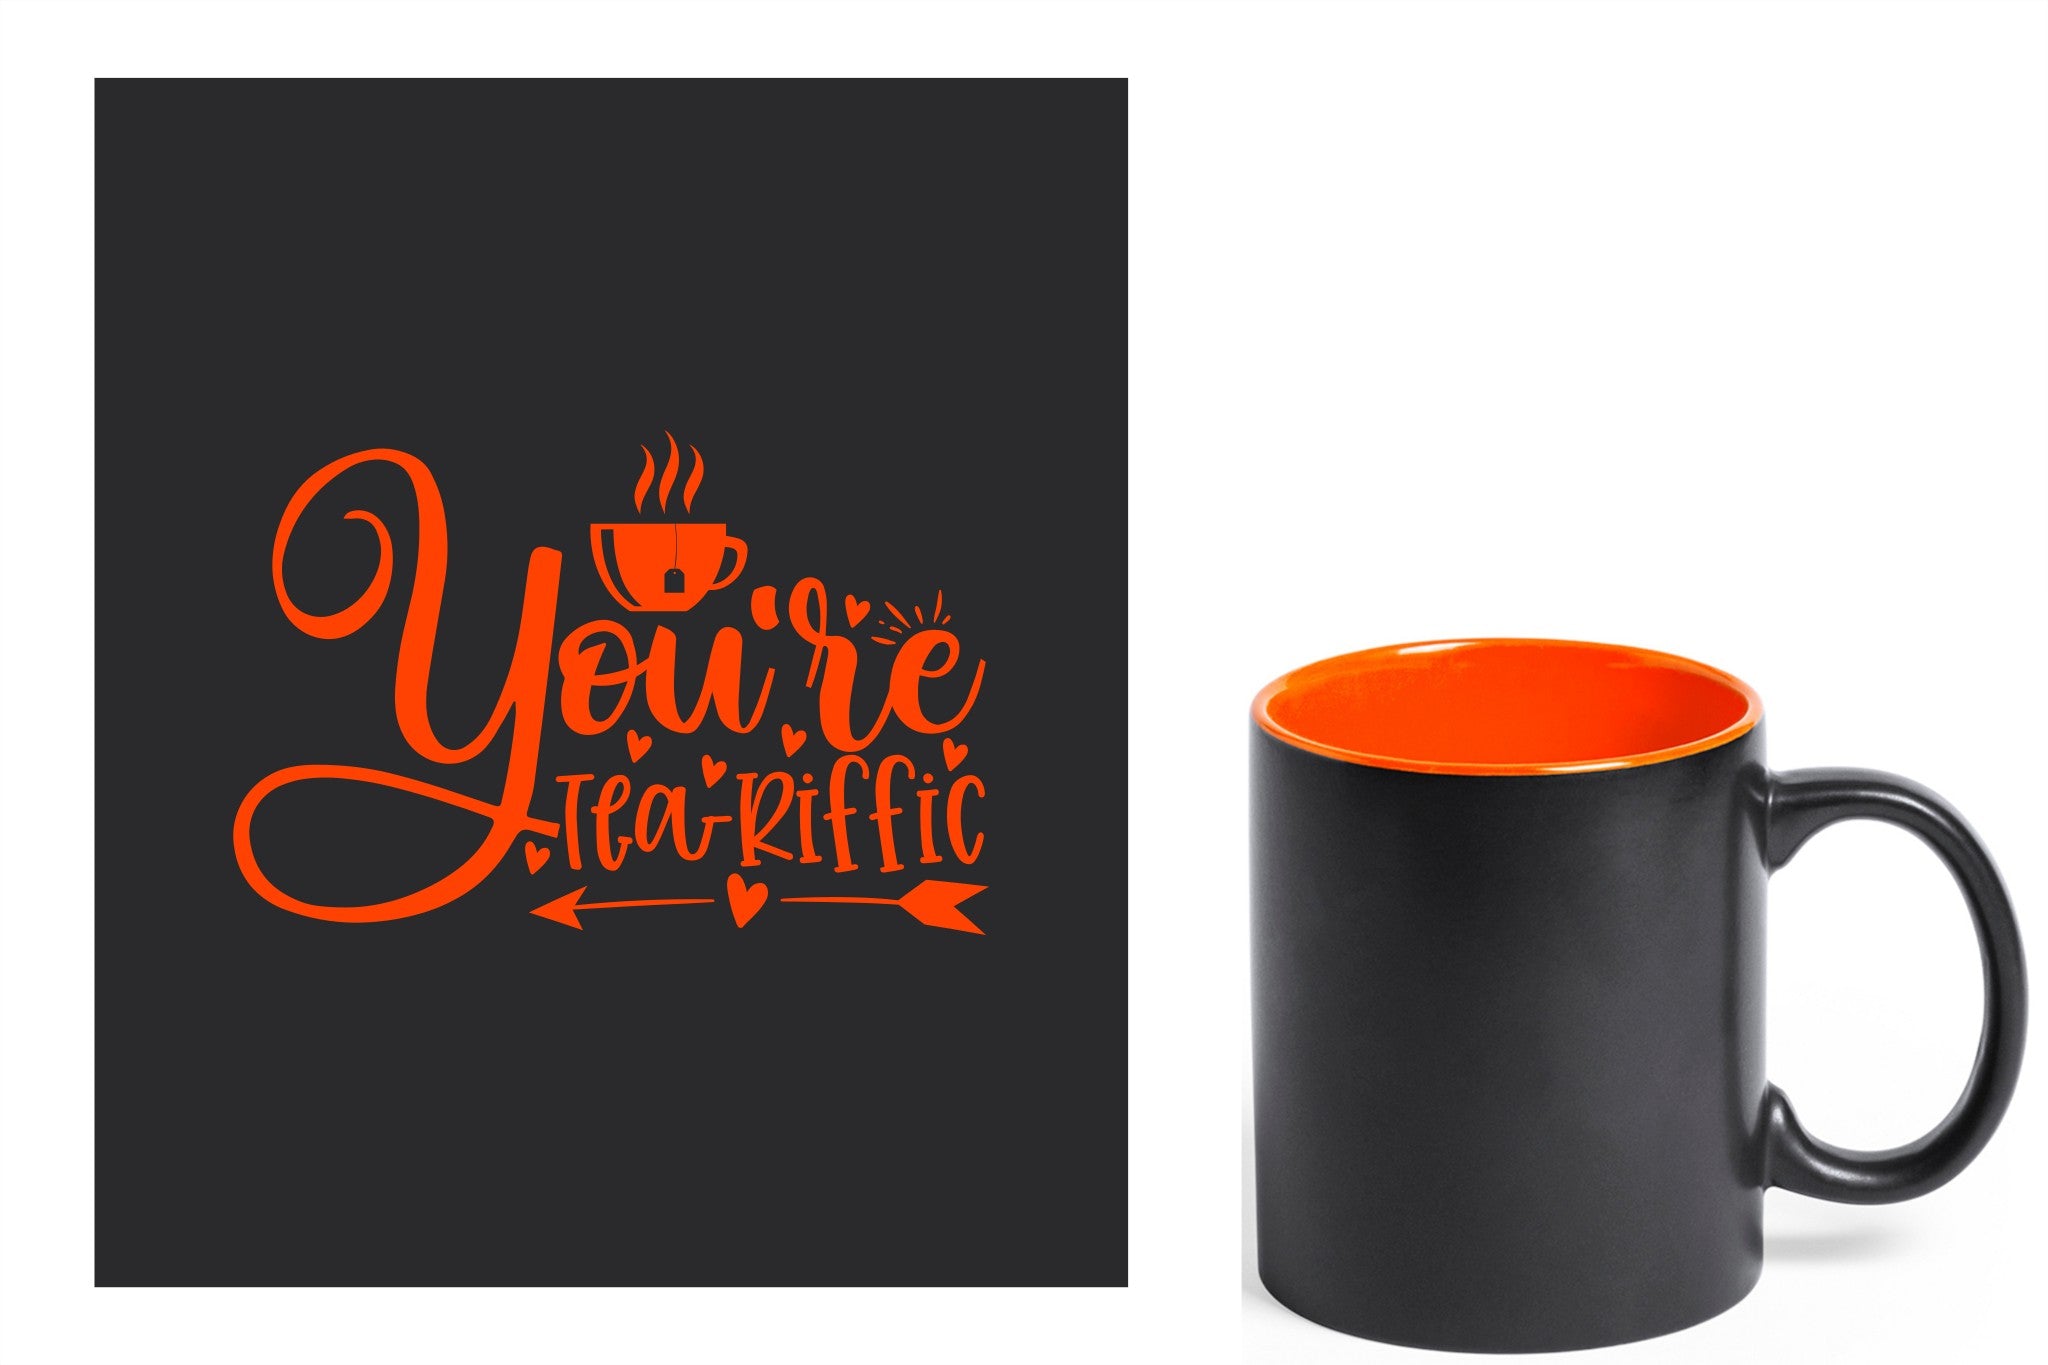 zwarte keramische mok met oranje gravure  'You're teariffic'.